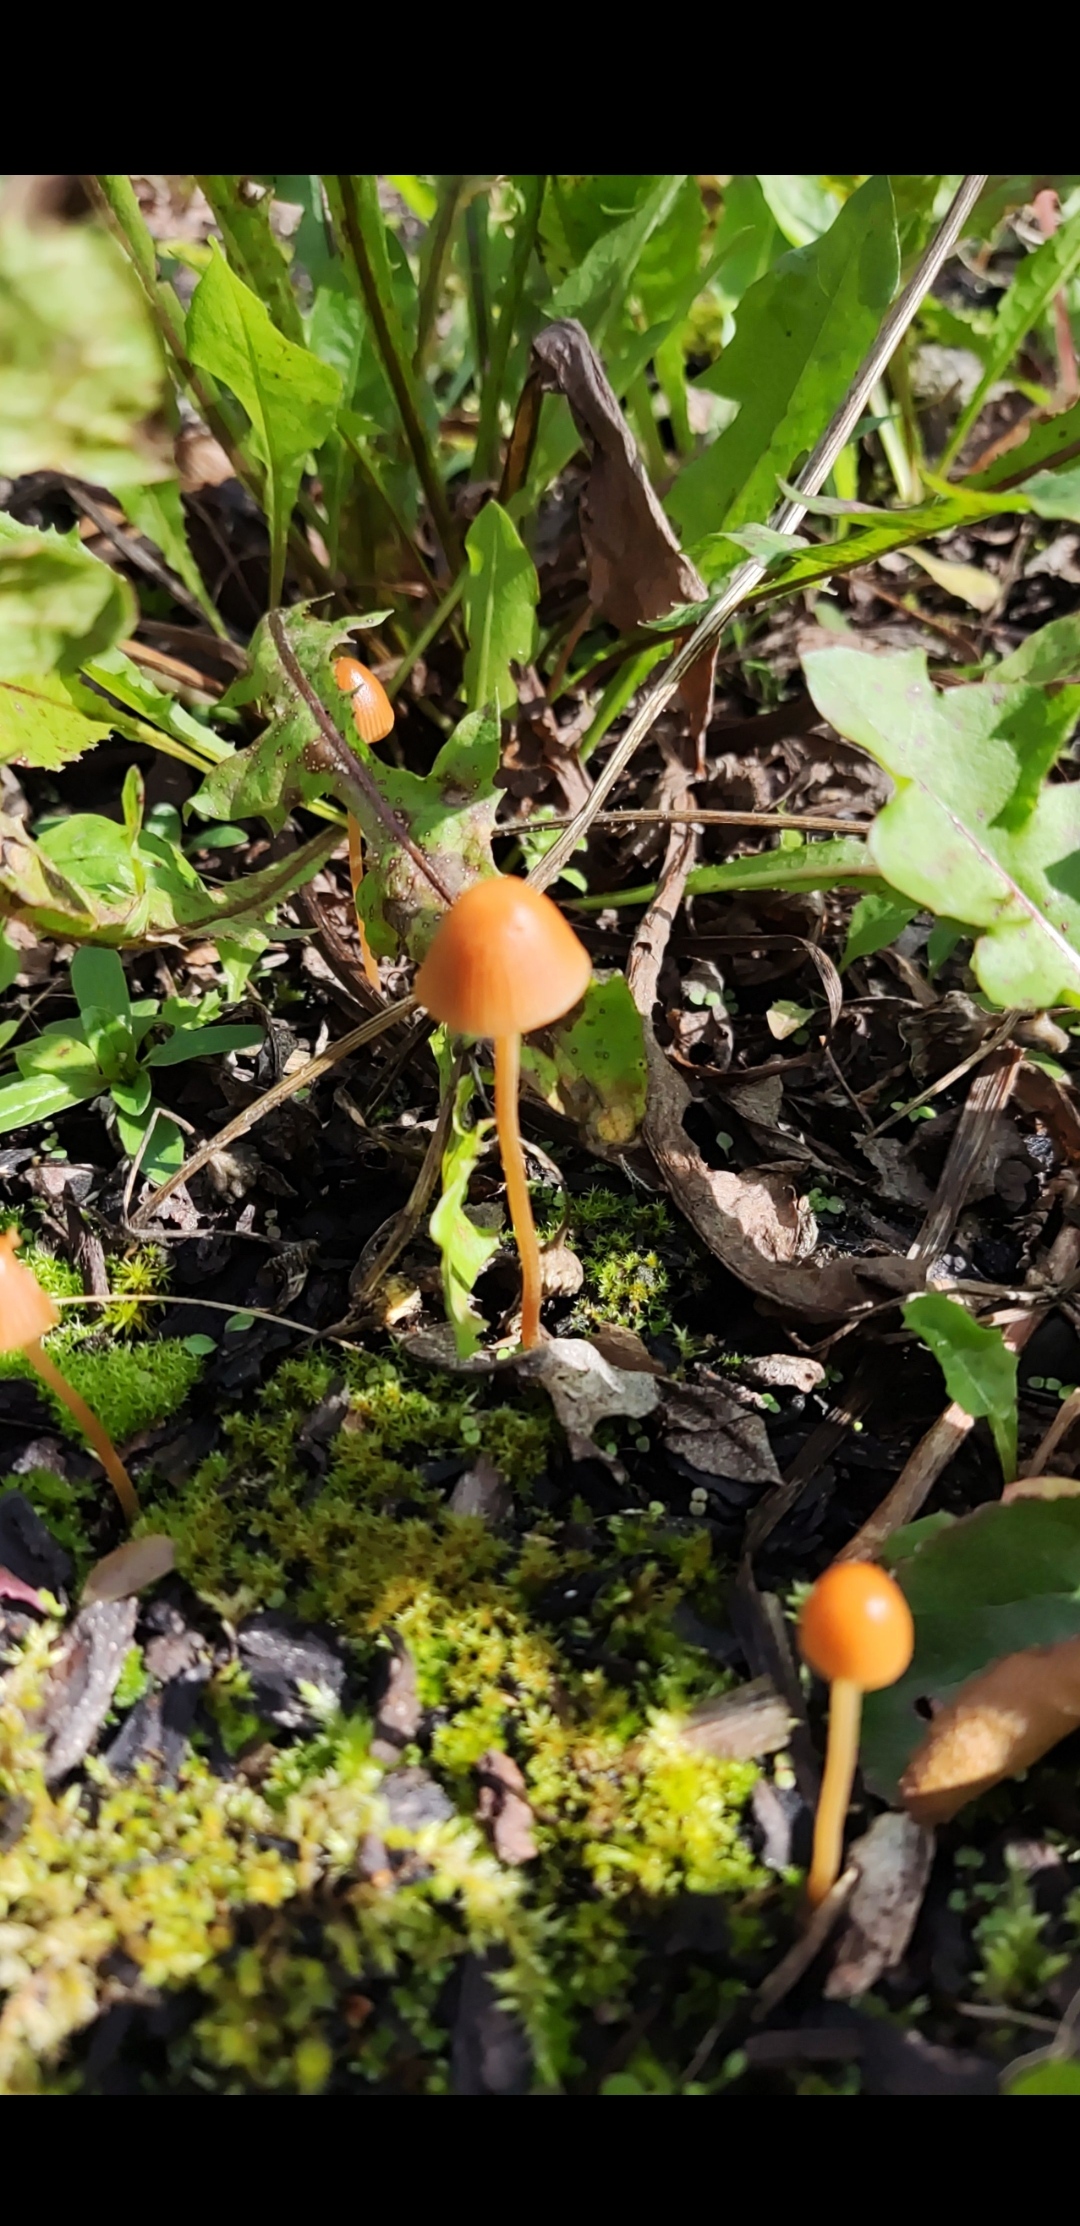 A smooth looking orange mushroom